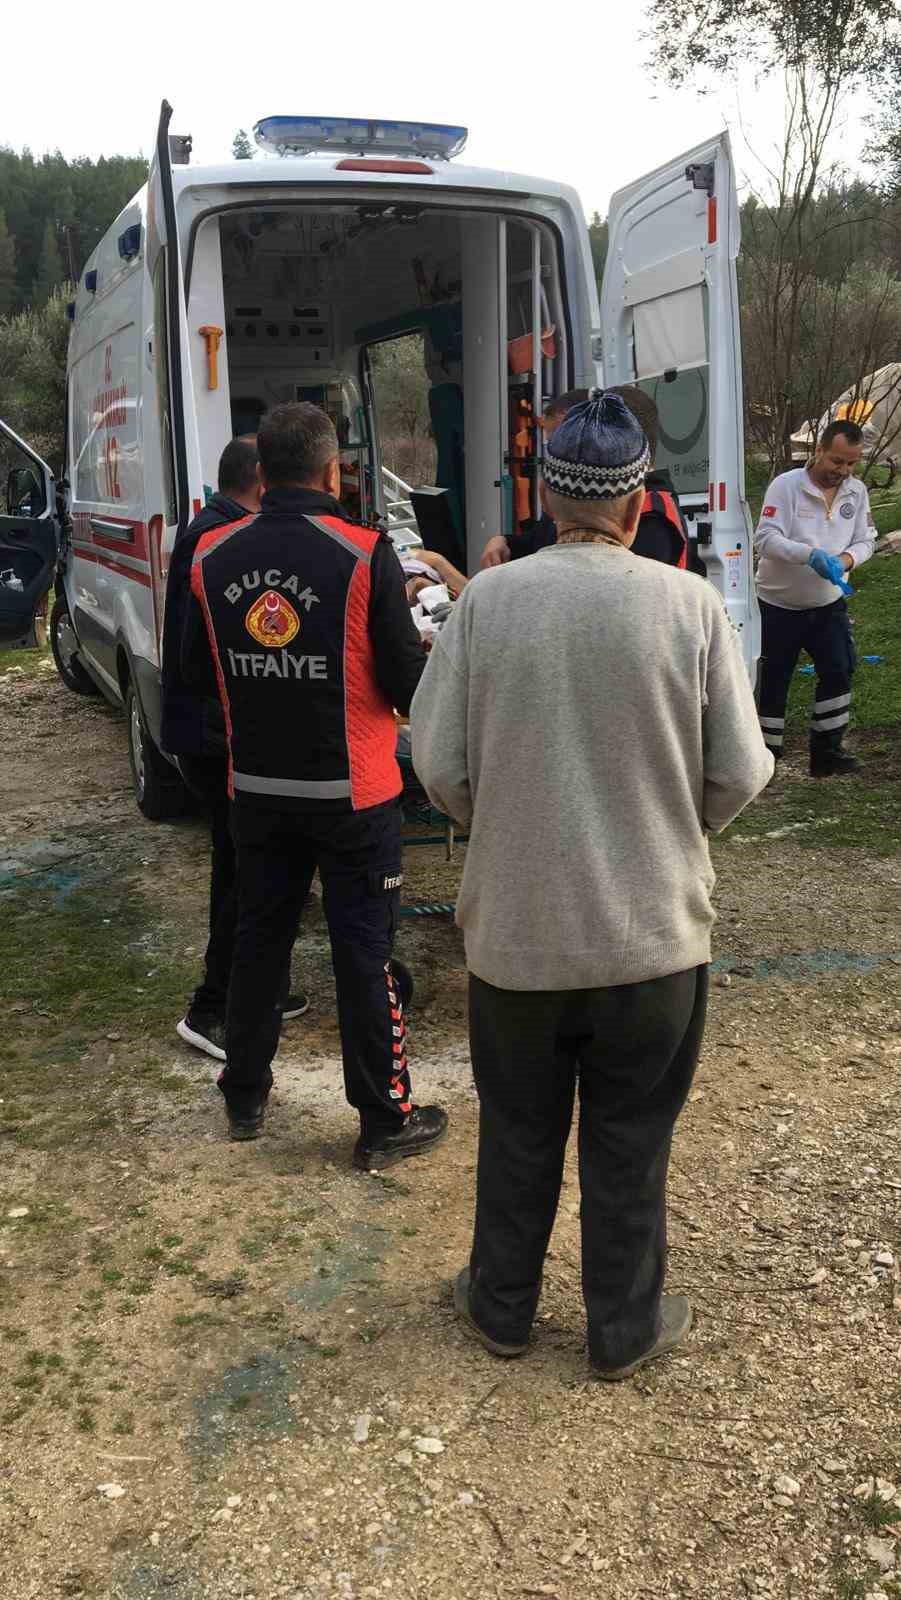 Burdur’da çapa makinesine ayağını kaptıran adam ekipler tarafından kurtarıldı
